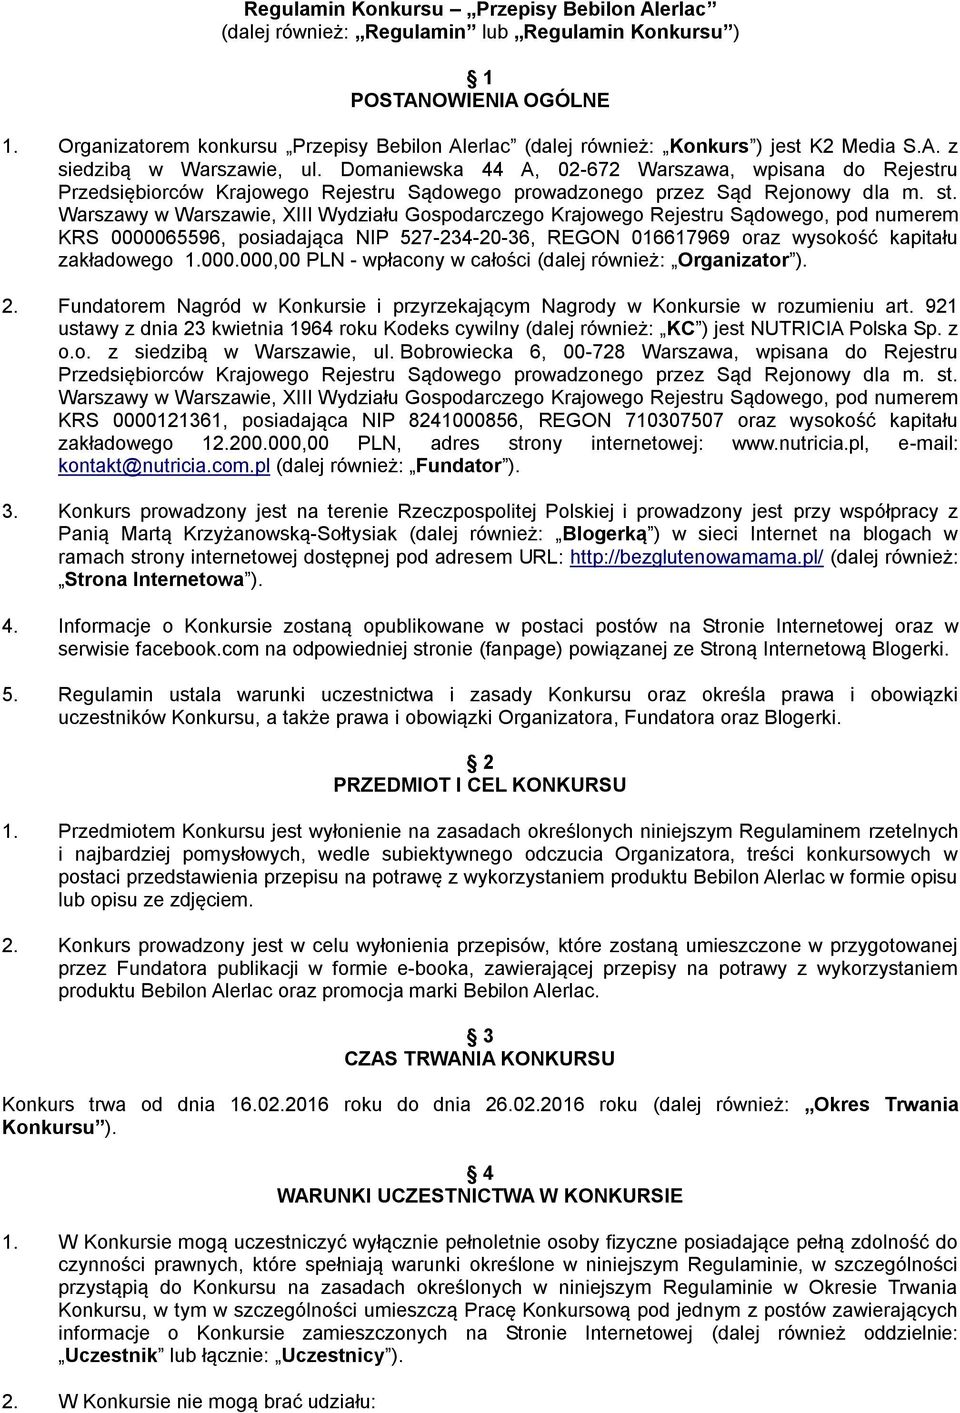 Domaniewska 44 A, 02-672 Warszawa, wpisana do Rejestru Przedsiębiorców Krajowego Rejestru Sądowego prowadzonego przez Sąd Rejonowy dla m. st.